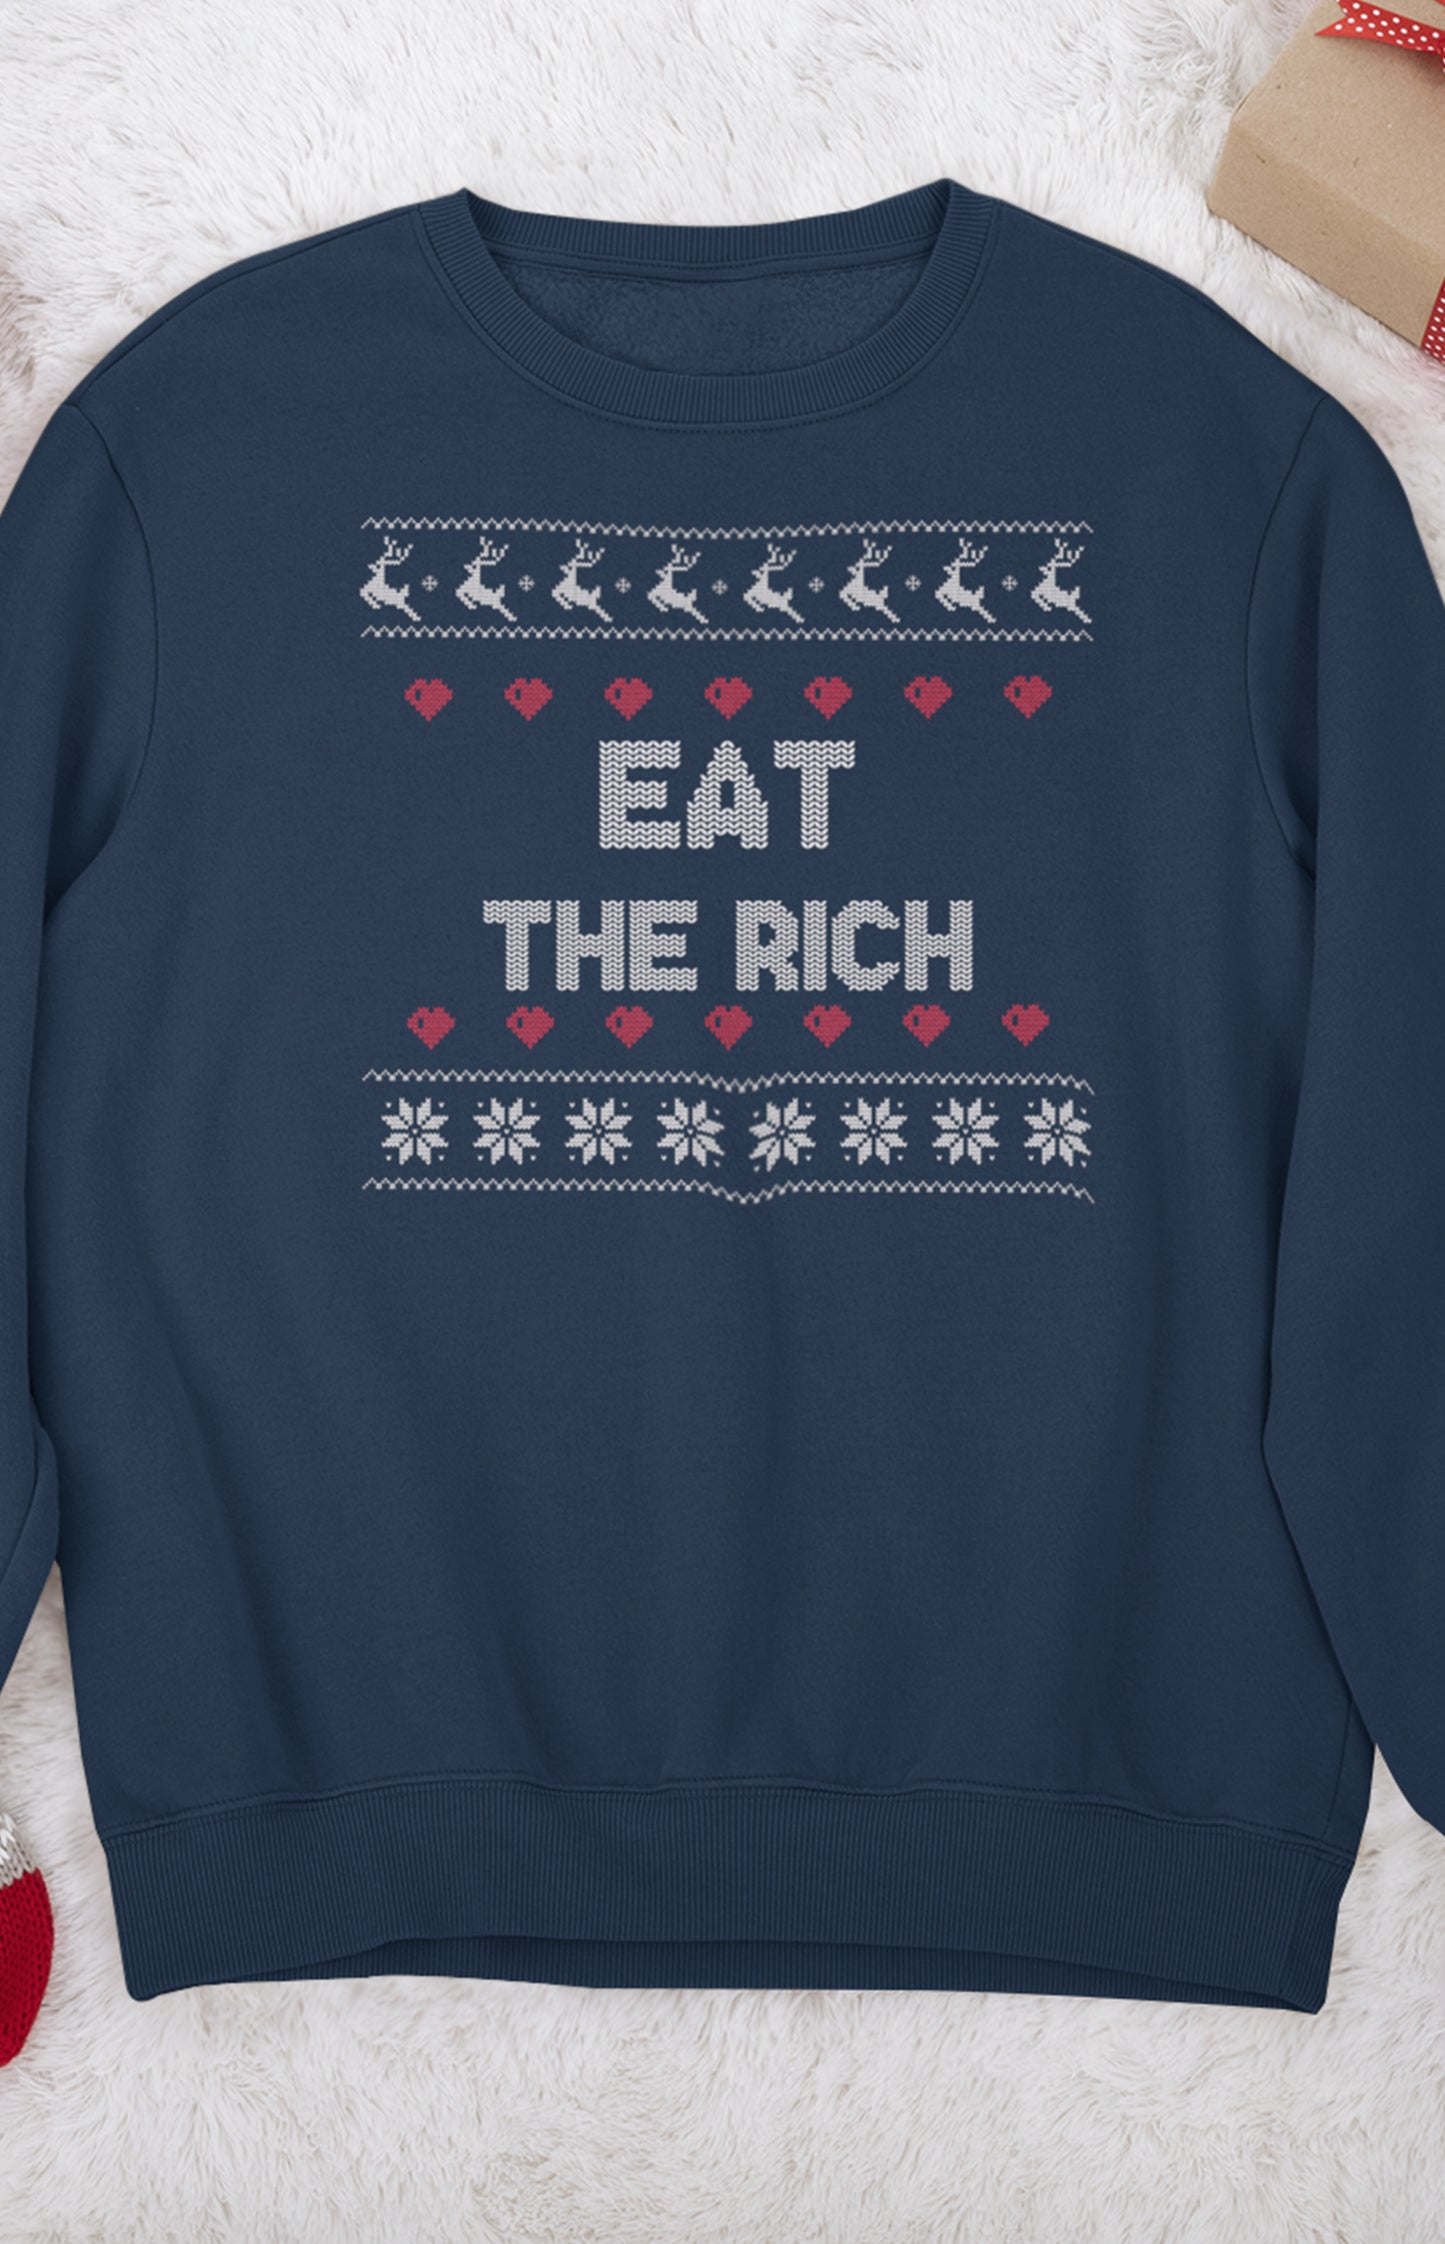 Unisex crewneck sweatshirt - Boil the rich